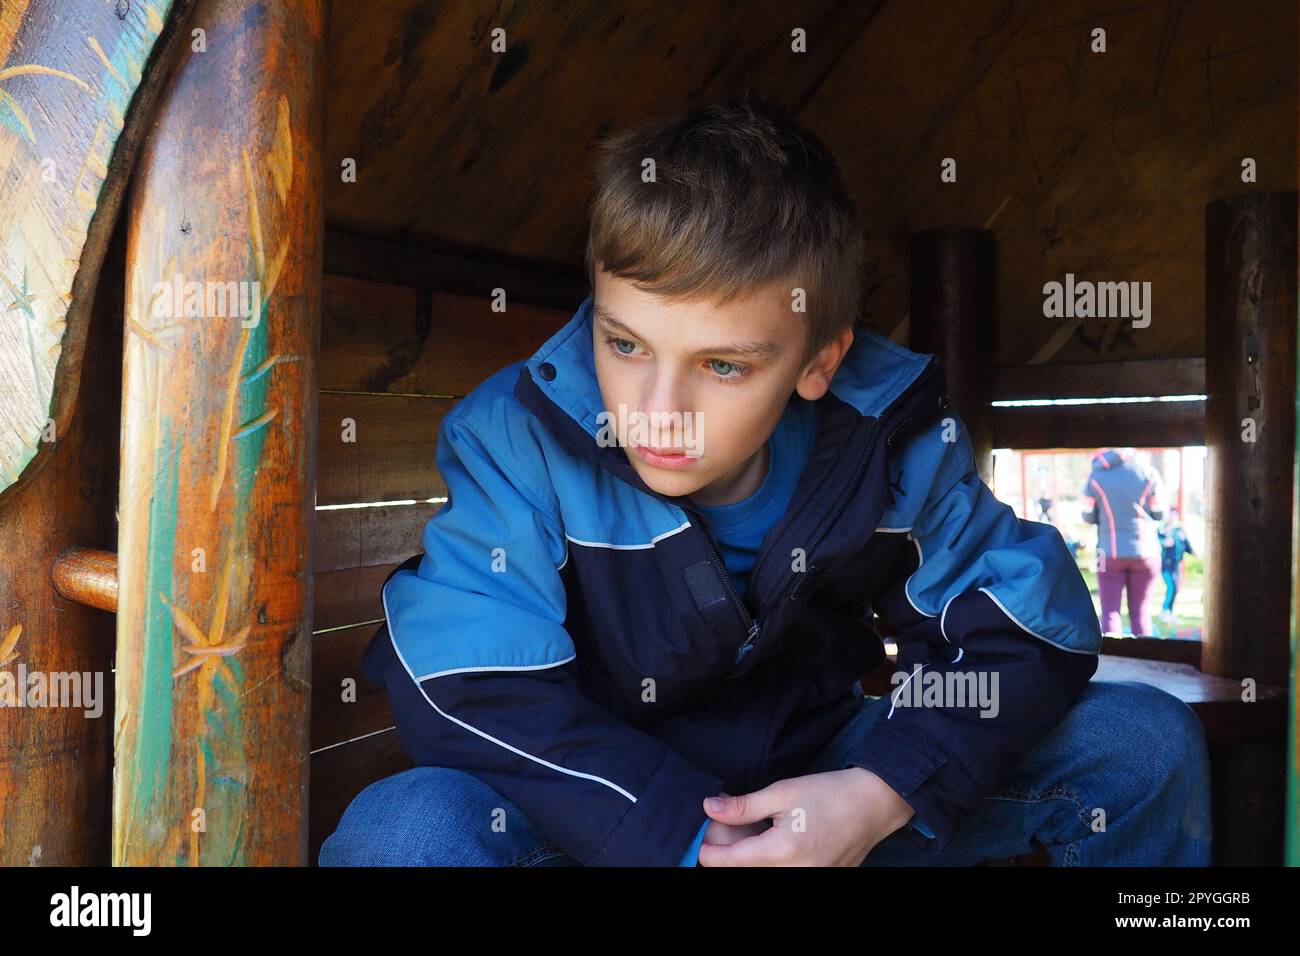 Ein 10-jähriger Kaukasier mit blonden Haaren und grauen Augen schaut aus der Tür eines Holzhauses auf einem Kinderspielplatz. Peekaboo. Das Kind versteckte sich. Hübsches Gesicht. Der Junge sitzt in einem kleinen Haus. Stockfoto